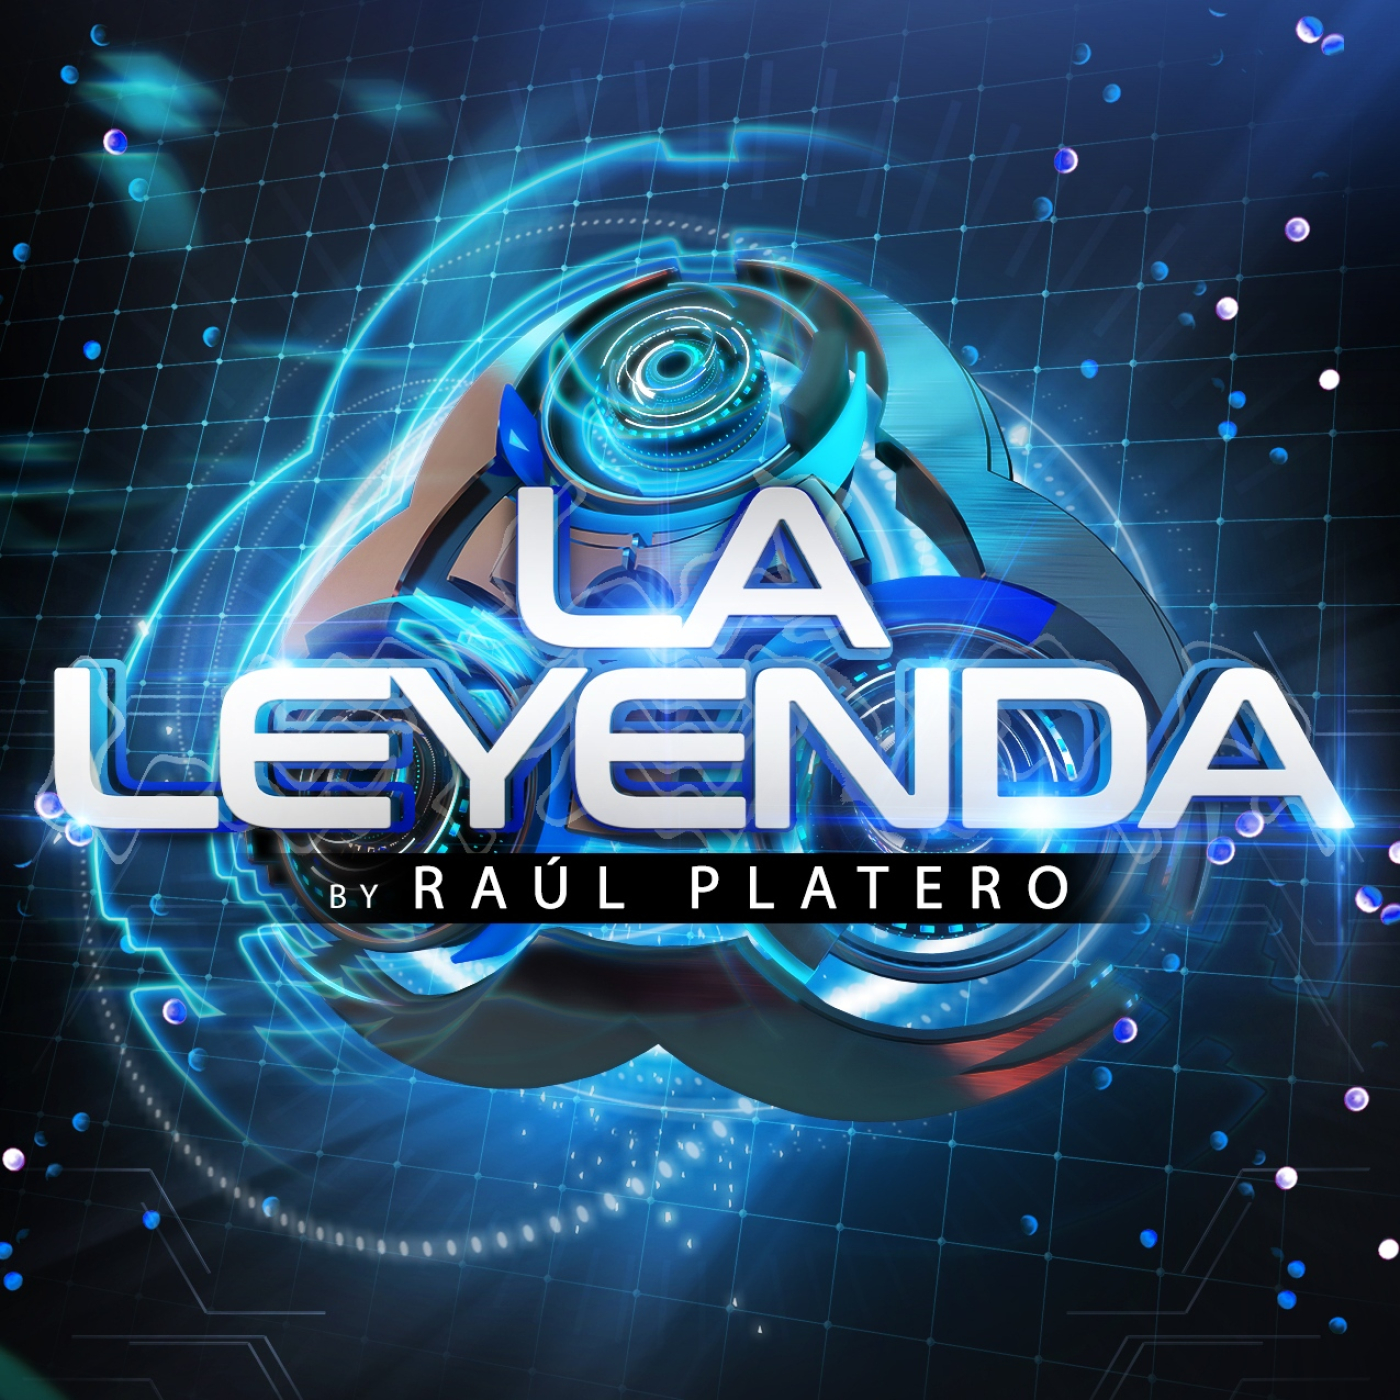 LA LEYENDA by RAUL PLATERO 2021 (Martes 2 Marzo)